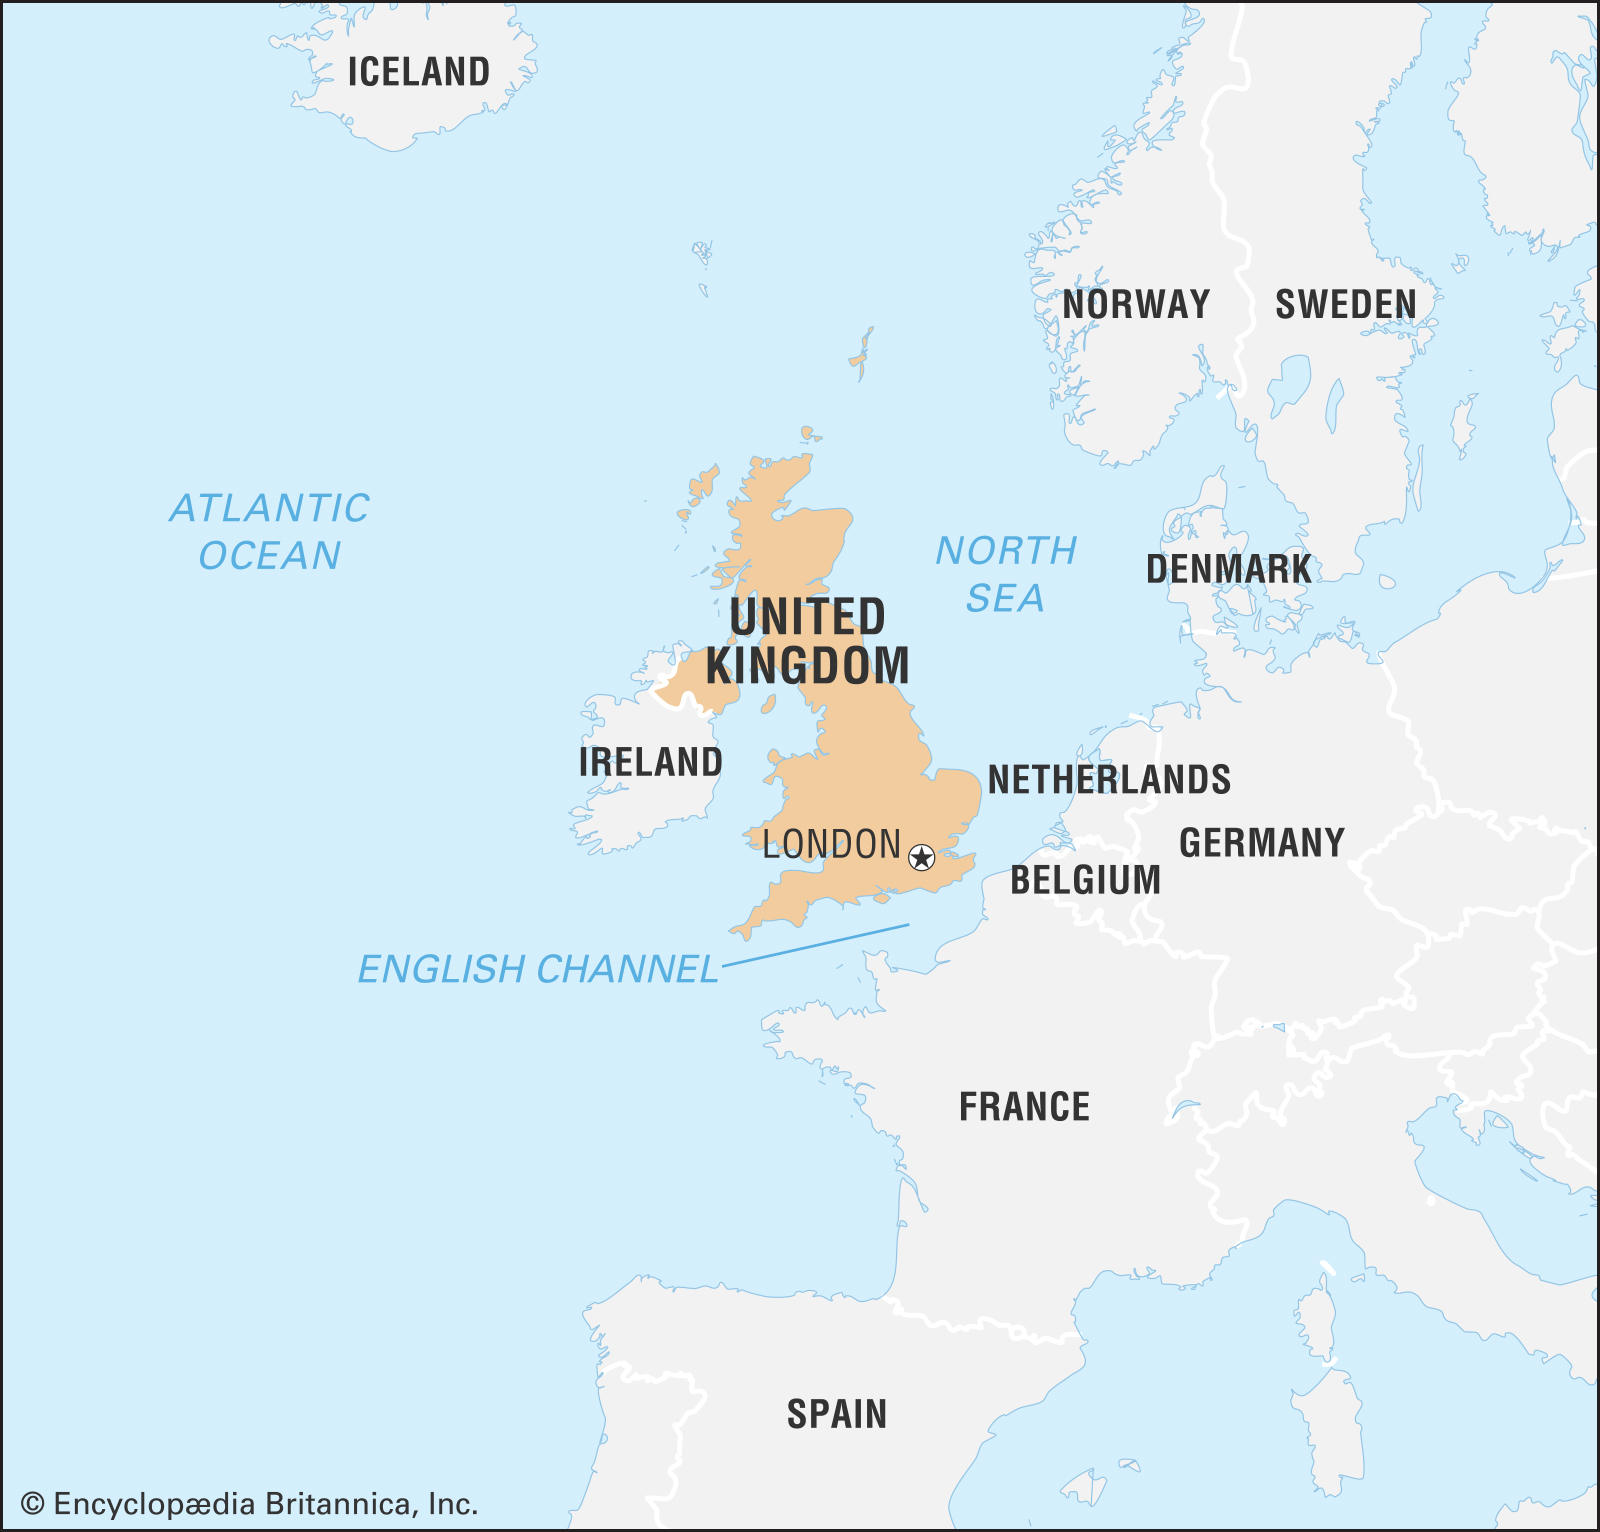 威尔士,苏格兰,以及北爱尔兰组成的一个岛国,国土面积约为